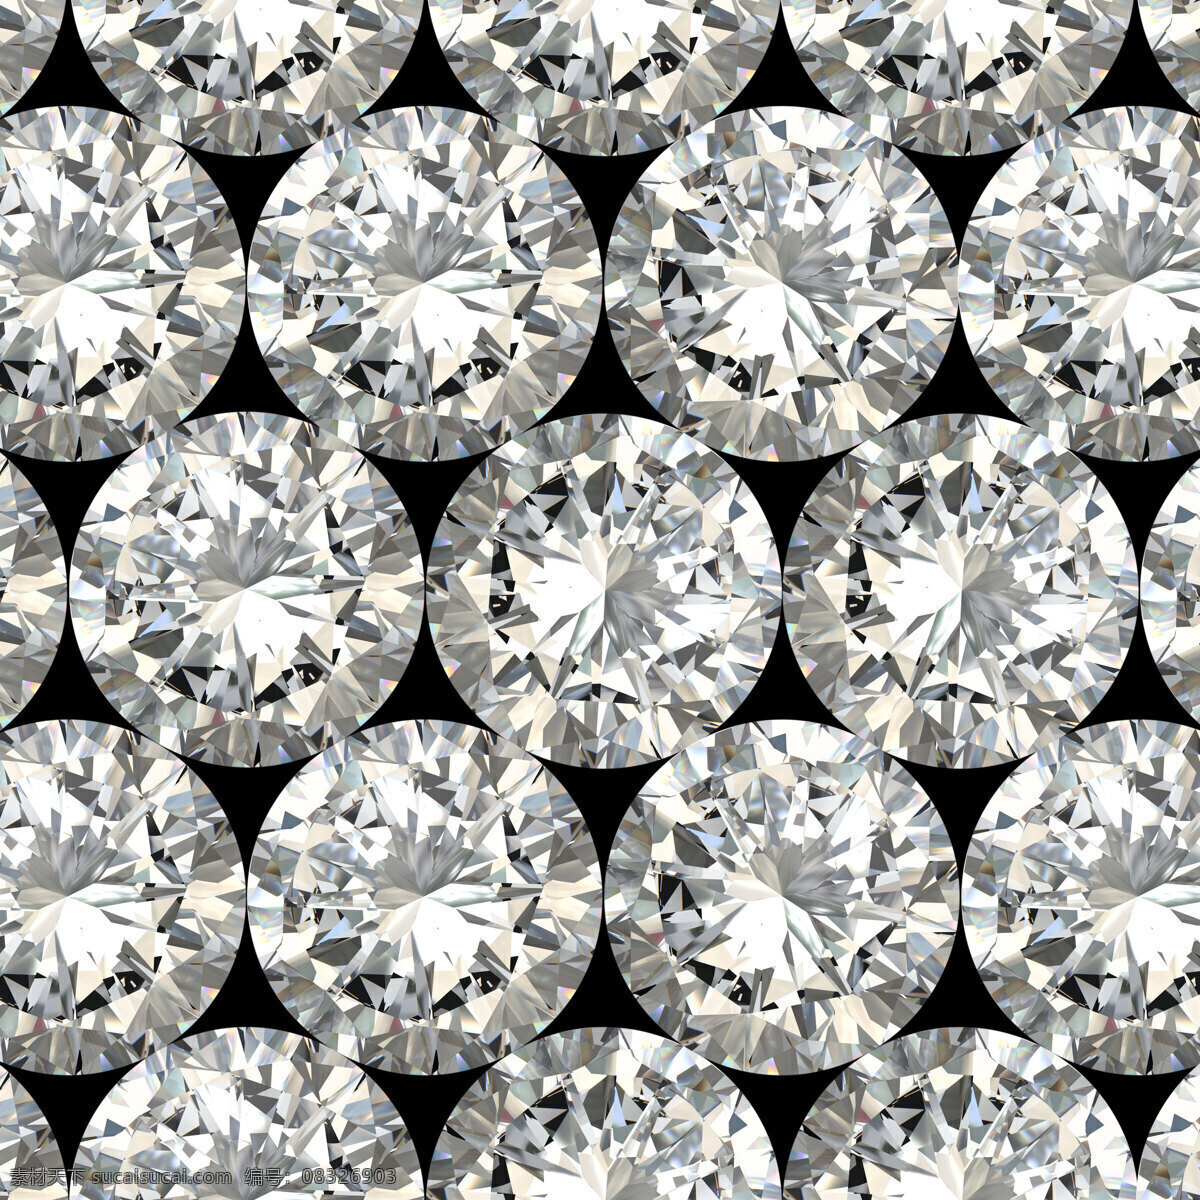 钻石 背景 素材图片 圆形钻石 钻石背景 钻石摄影 钻石素材 珠宝 饰品 首饰 珠宝服饰 生活百科